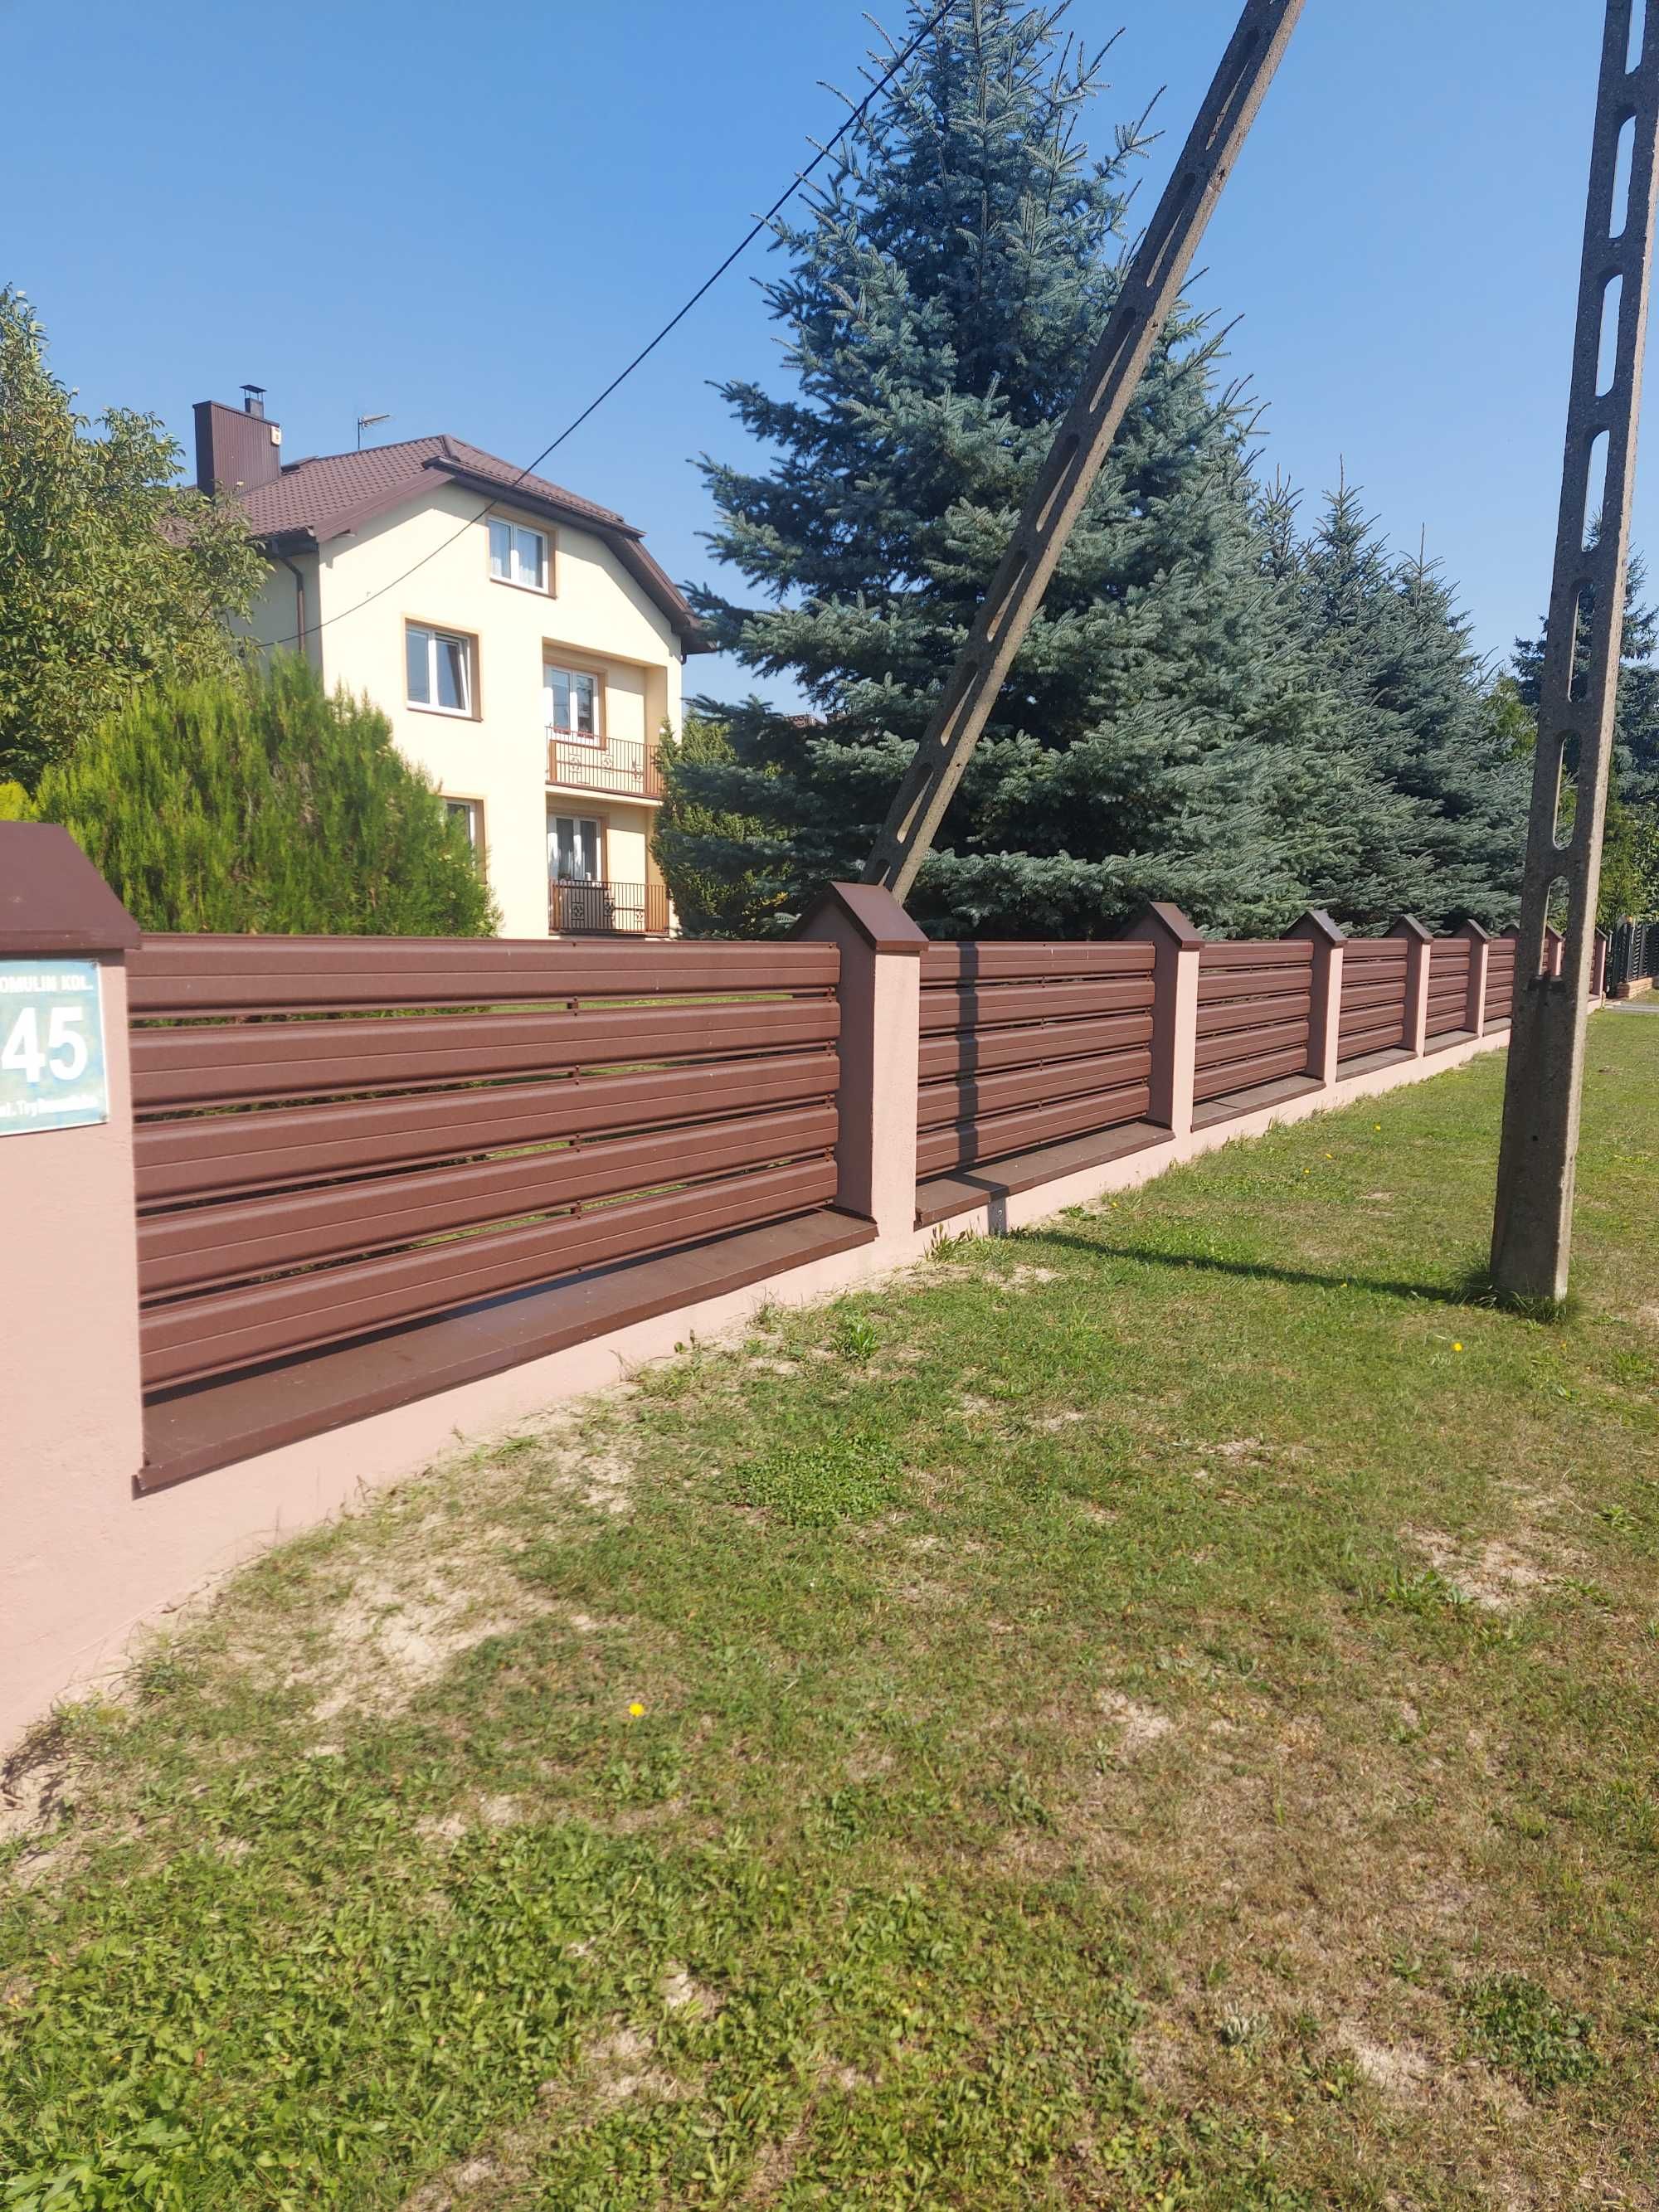 Panel metalowy ogrodzeniowy sztachety 17.5cm szer. Bramy Barierki Prod